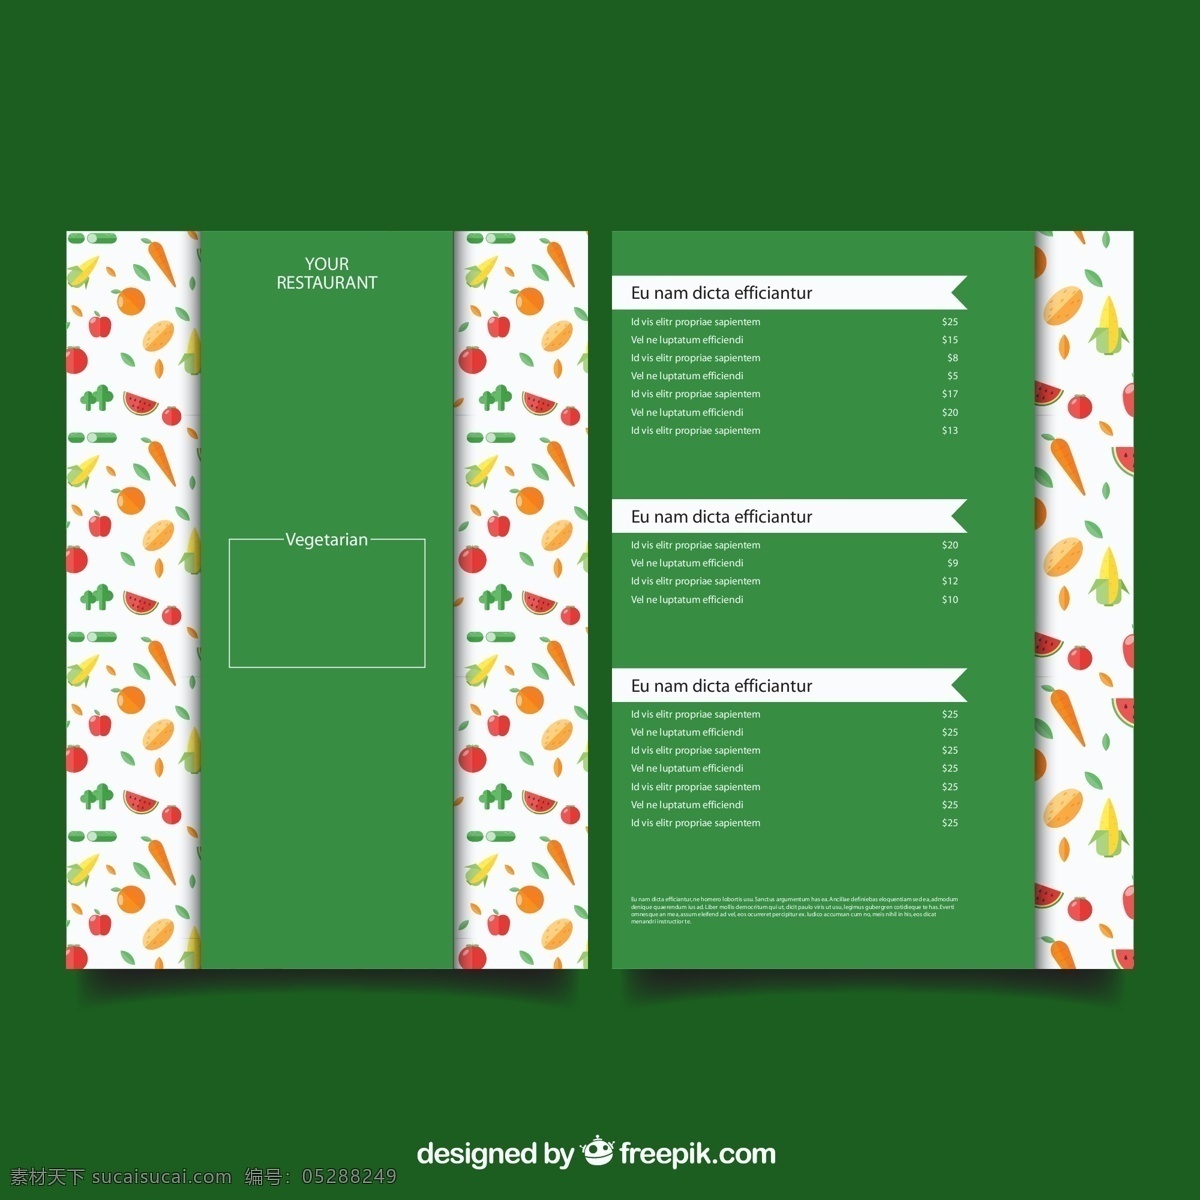 绿色 简约 菜单 模板 菜谱设计 创意菜单 菜单模板 菜单图下载 矢量素材 平面广告 菜单素材 英文菜单 绿色菜单